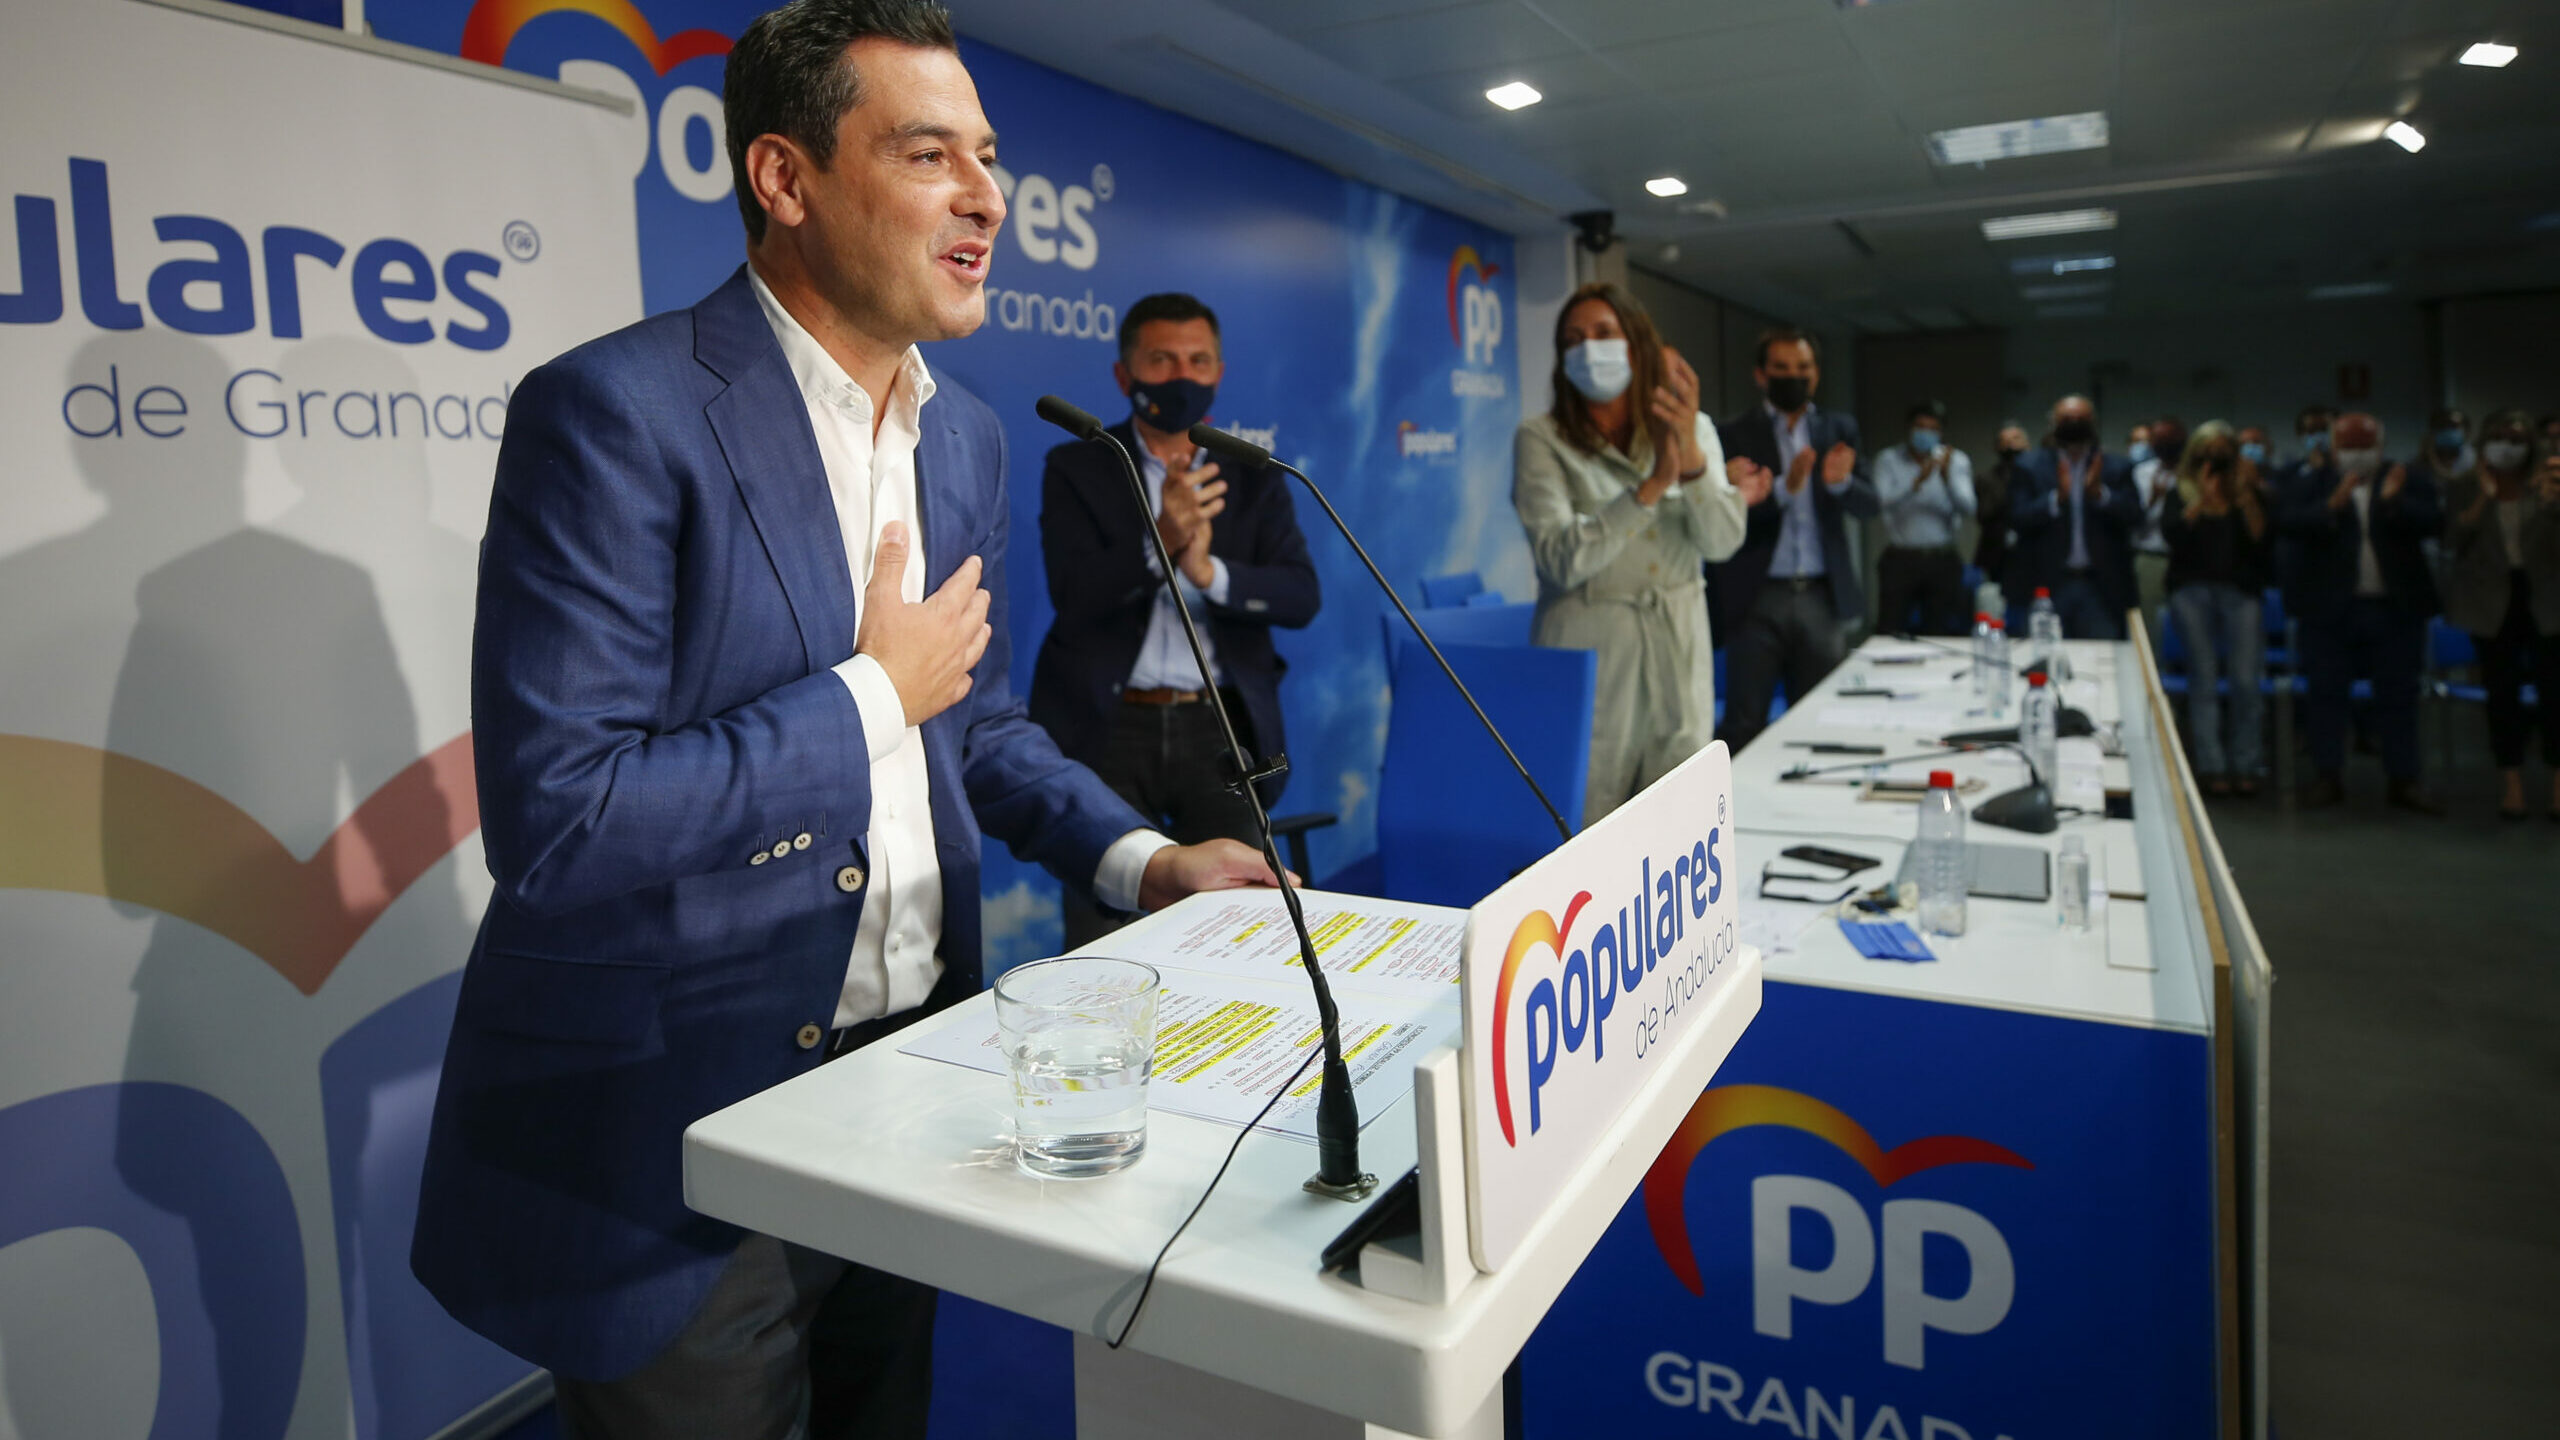 El CIS andaluz amplía la victoria del PP y Moreno podría elegir a Vox o Cs para gobernar